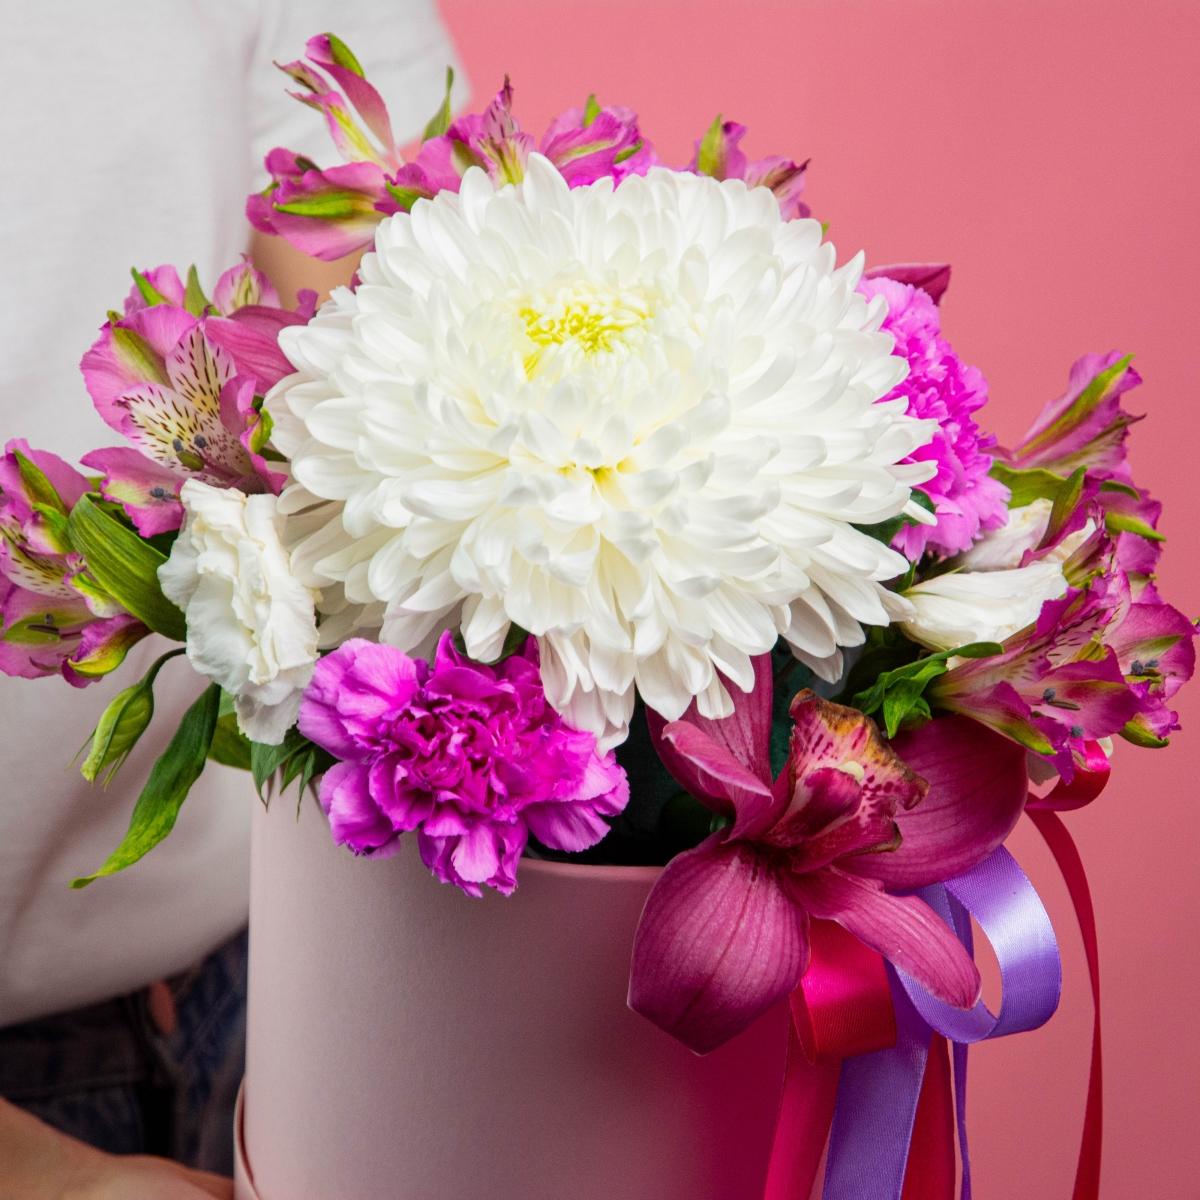 Коробка цветов с белой хризантемой и альстромериями